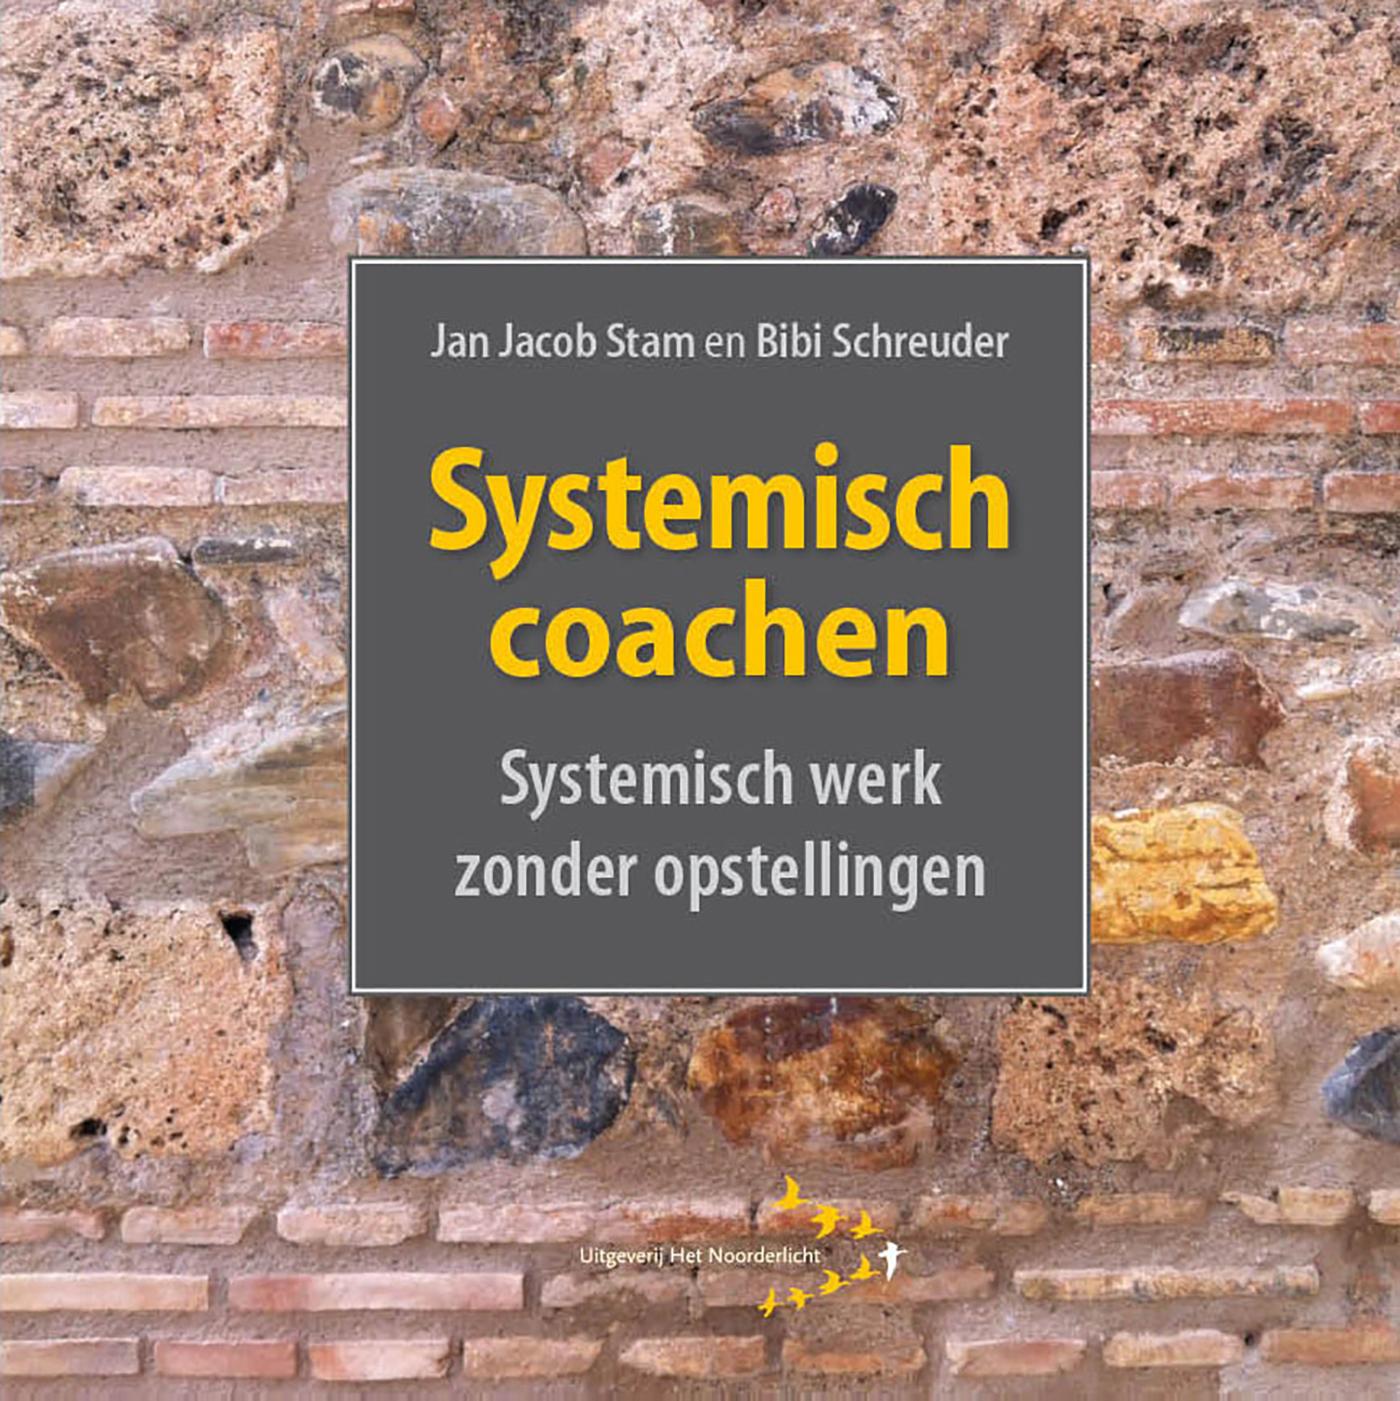 Systemisch coachen (Ebook)